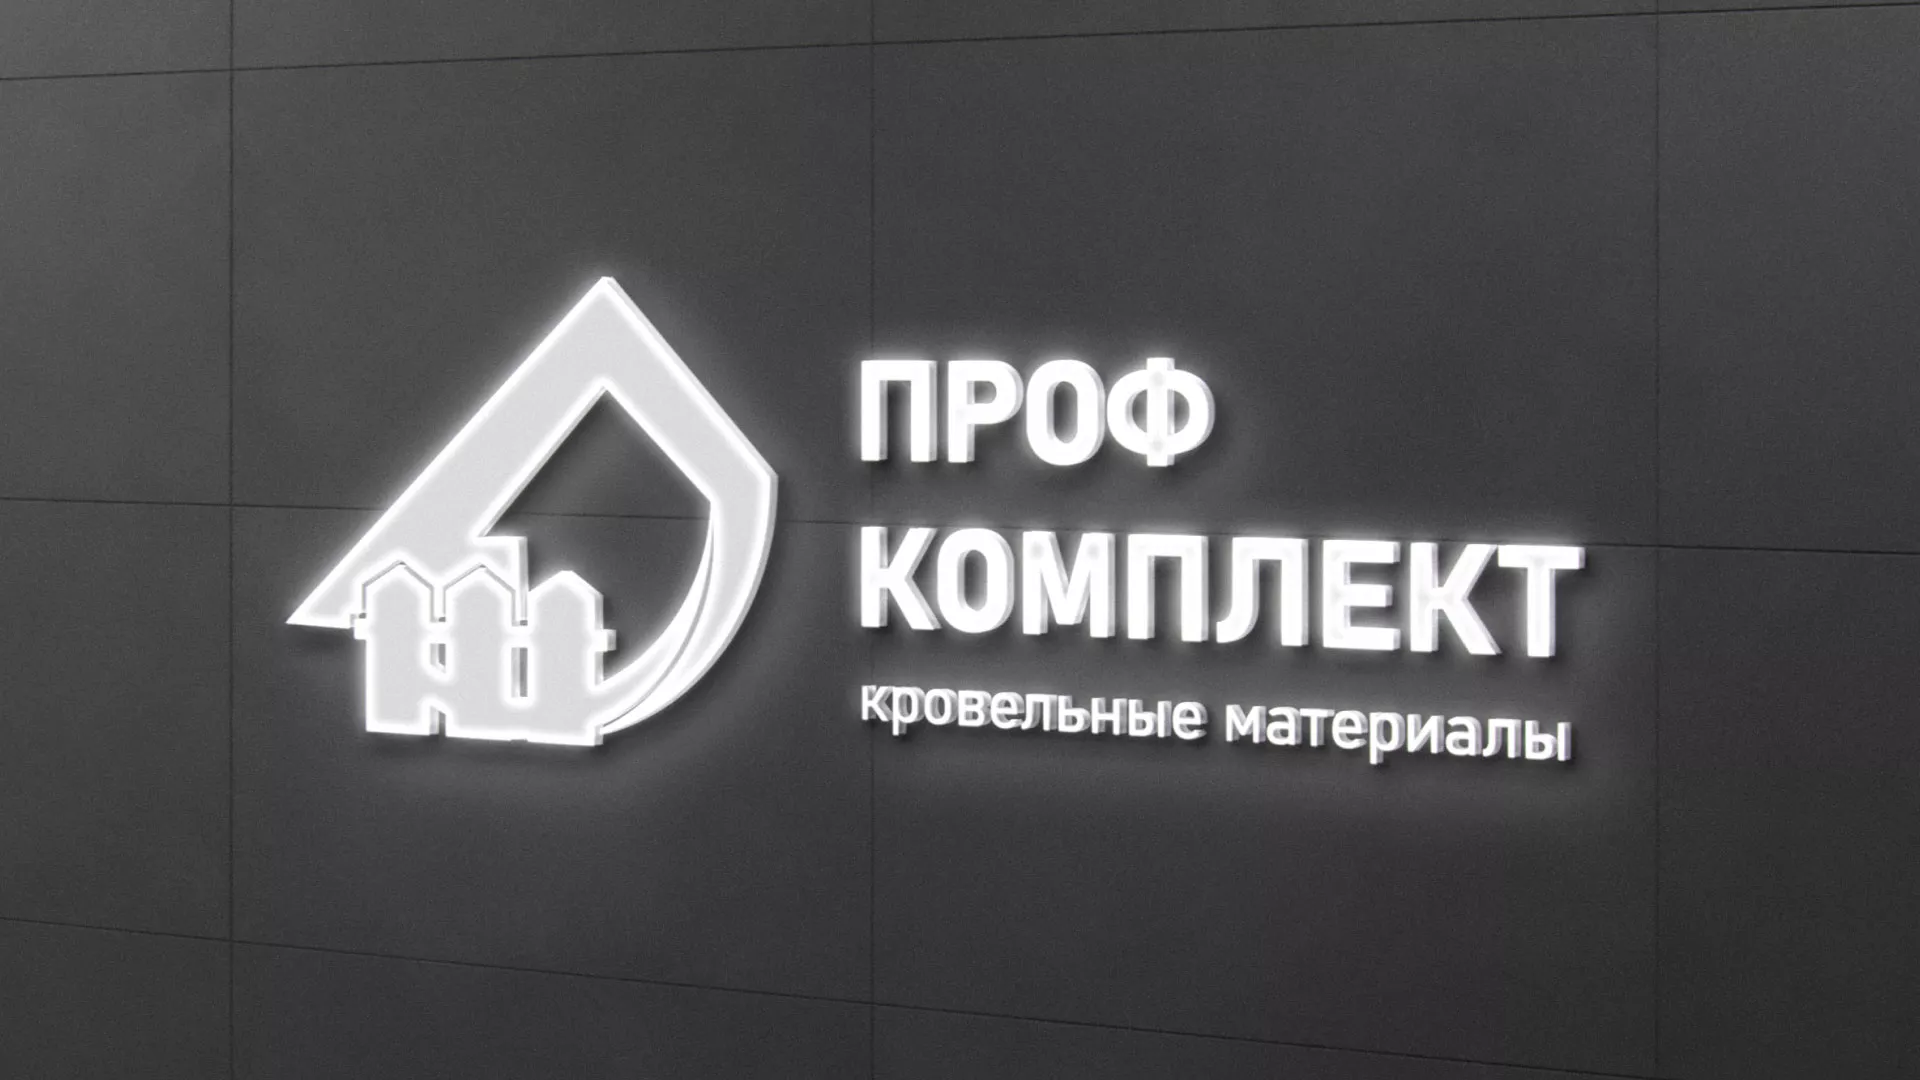 Разработка логотипа «Проф Комплект» в Вышнем Волочке